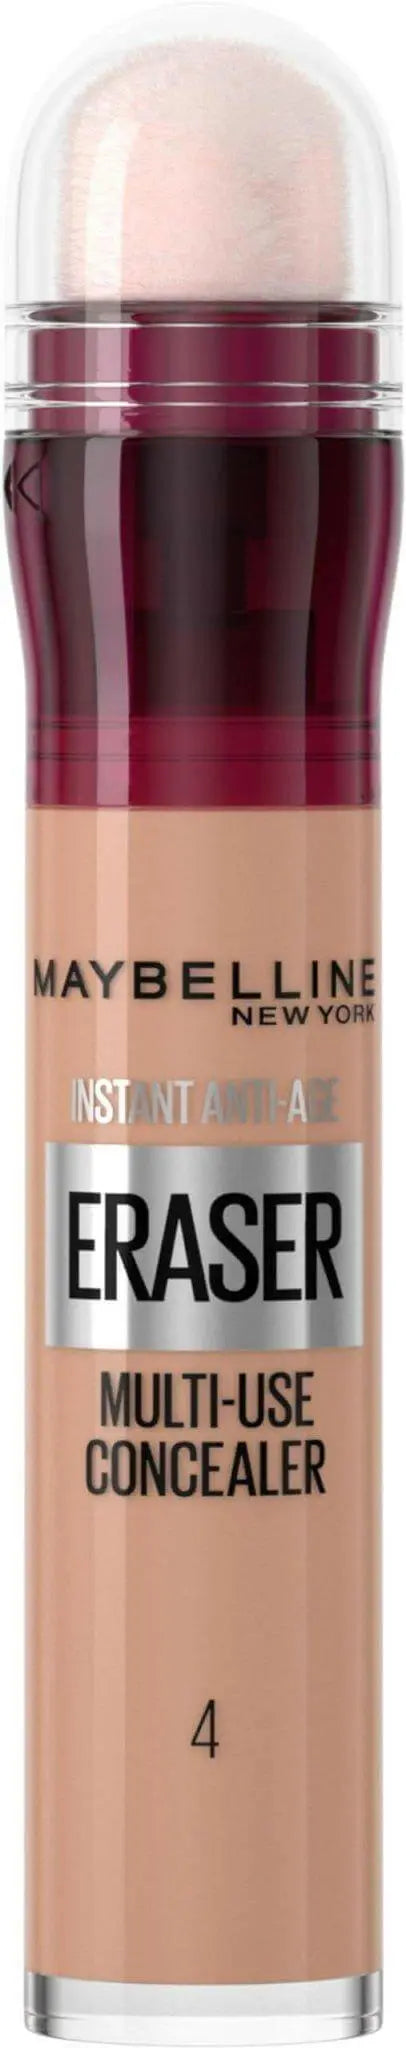 Maybelline Eraser Eye Concealer Light, 01